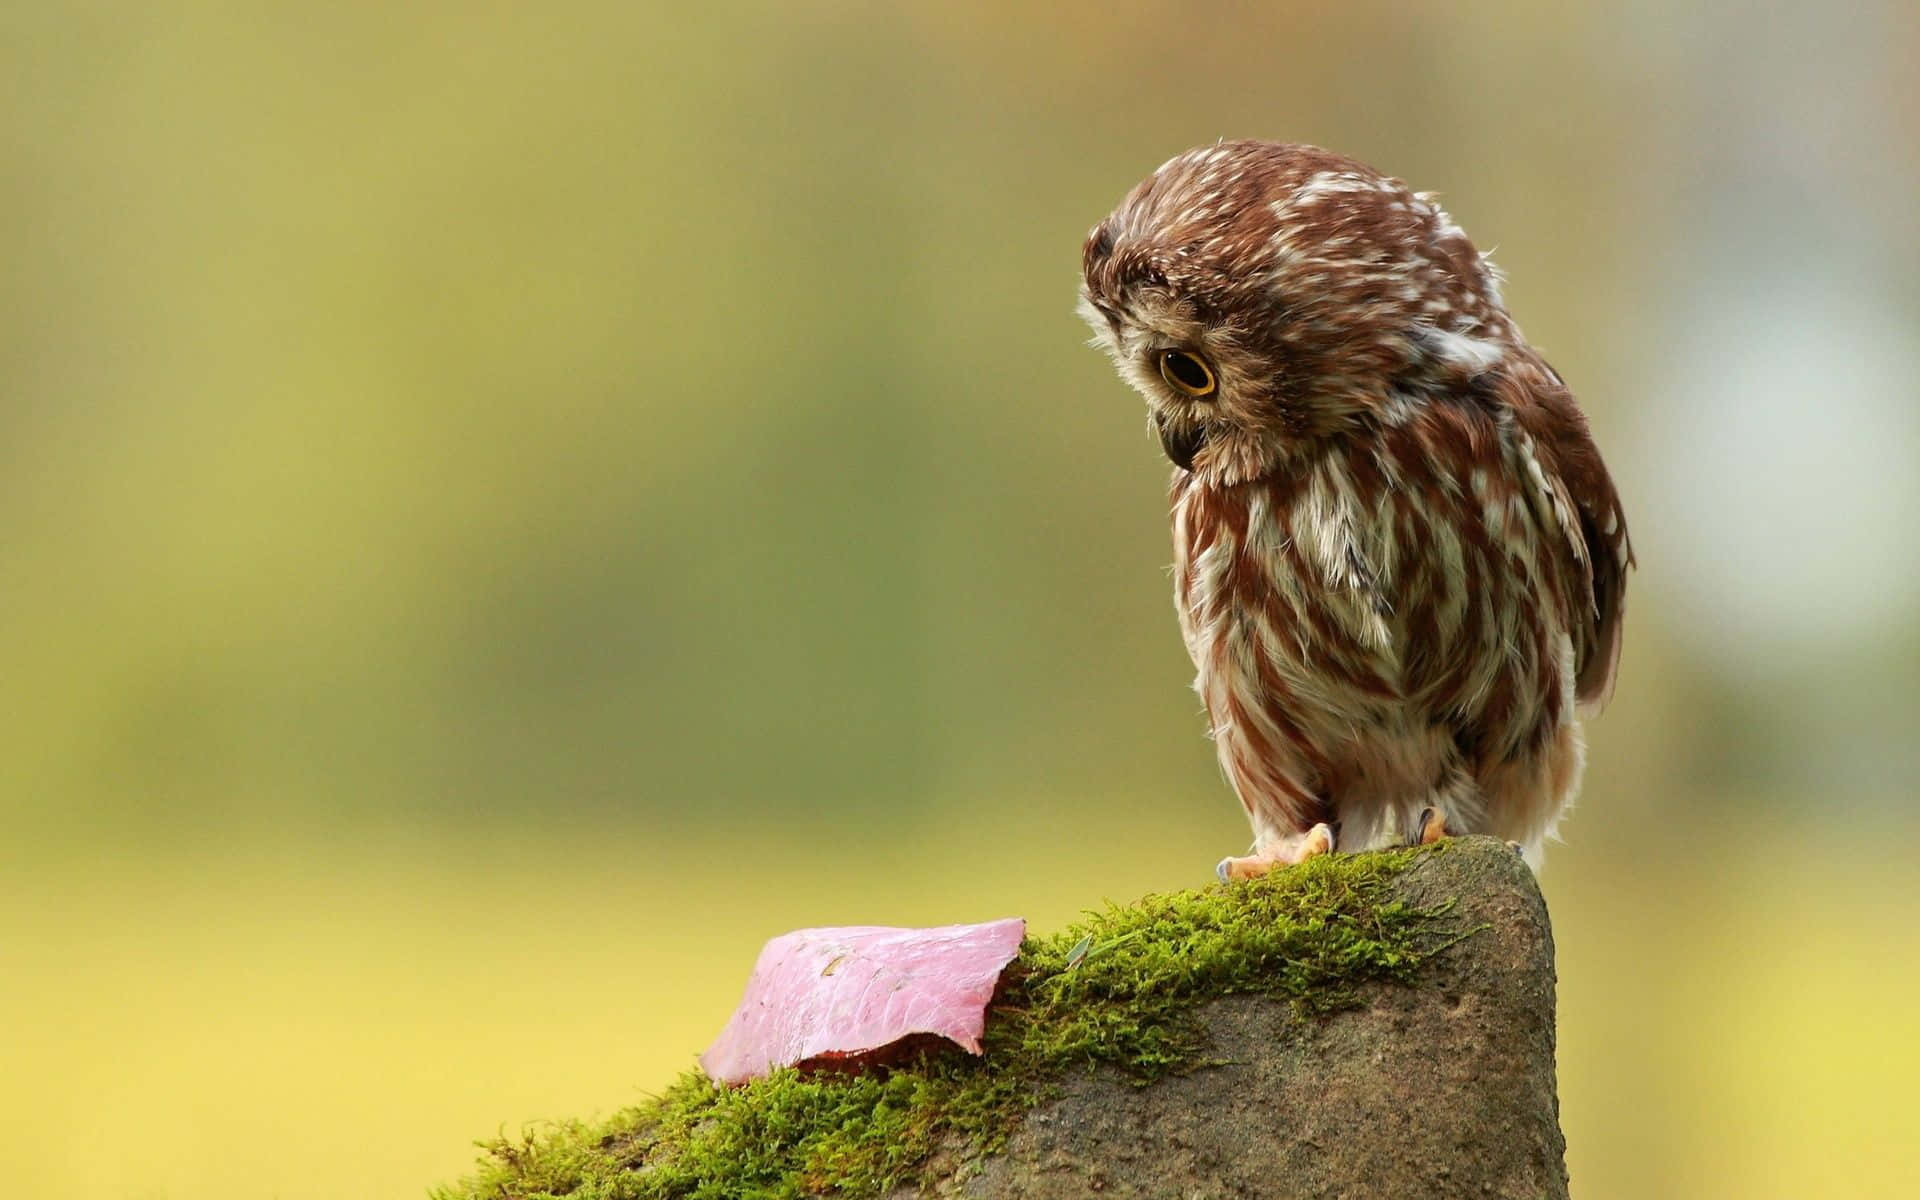 A Cute, Big-Eyed Owl